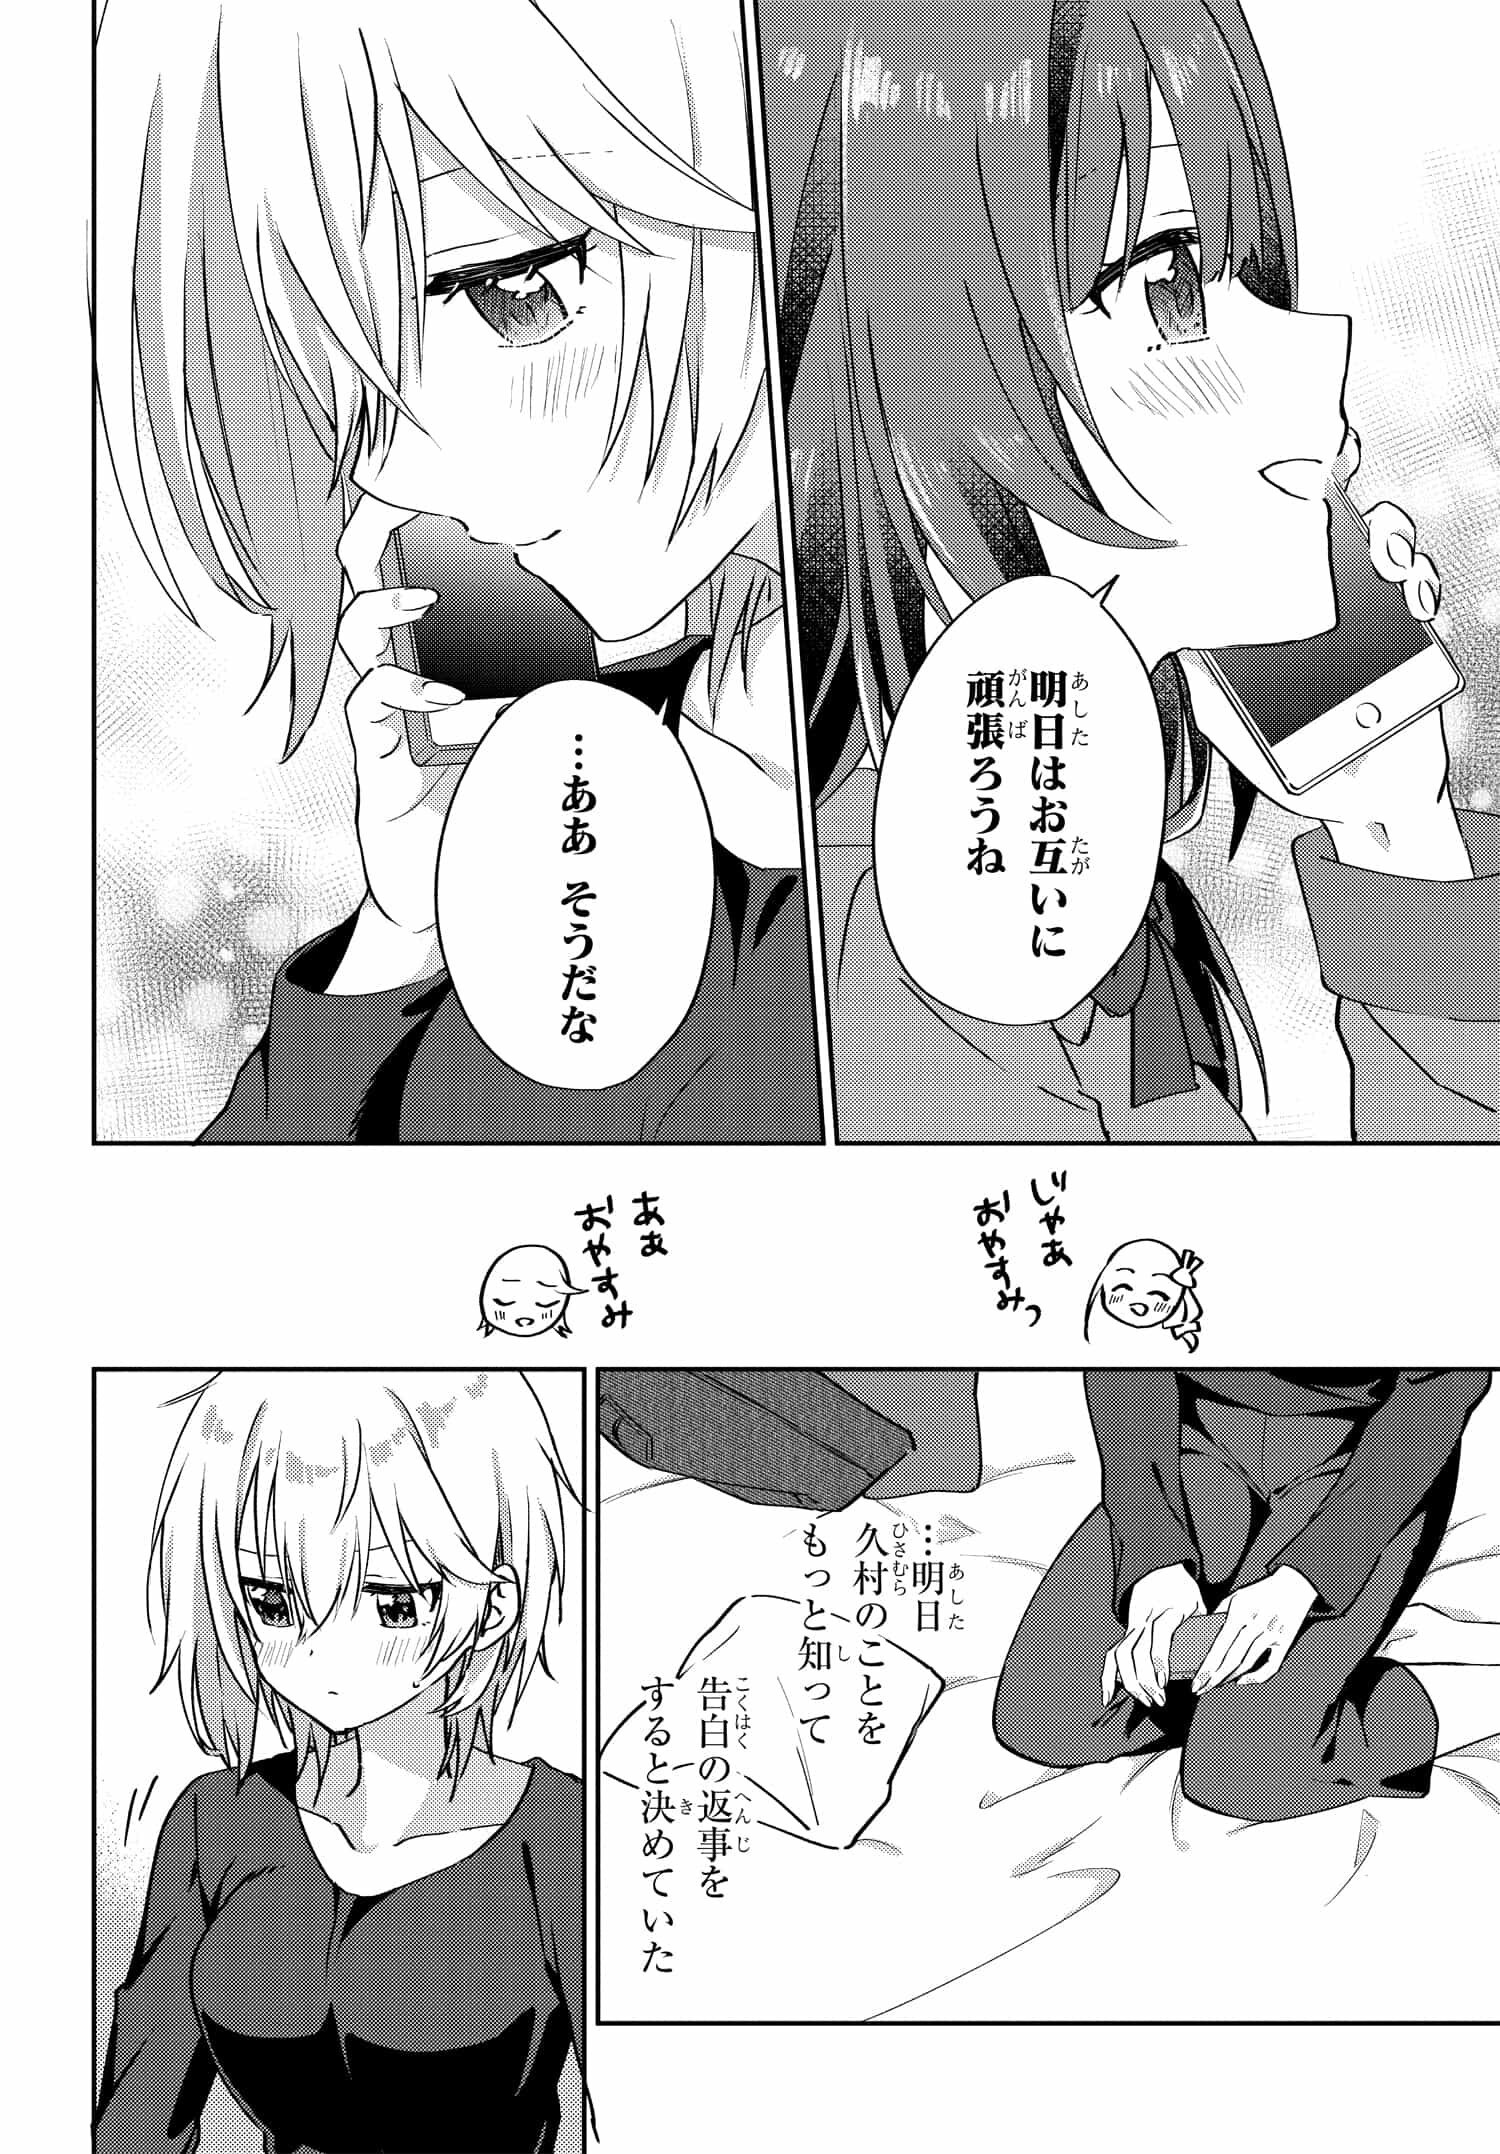 Romcom Manga ni Haitte Shimatta no de, Oshi no Make Heroine wo Zenryoku de Shiawase ni suru - Chapter 6.3 - Page 6